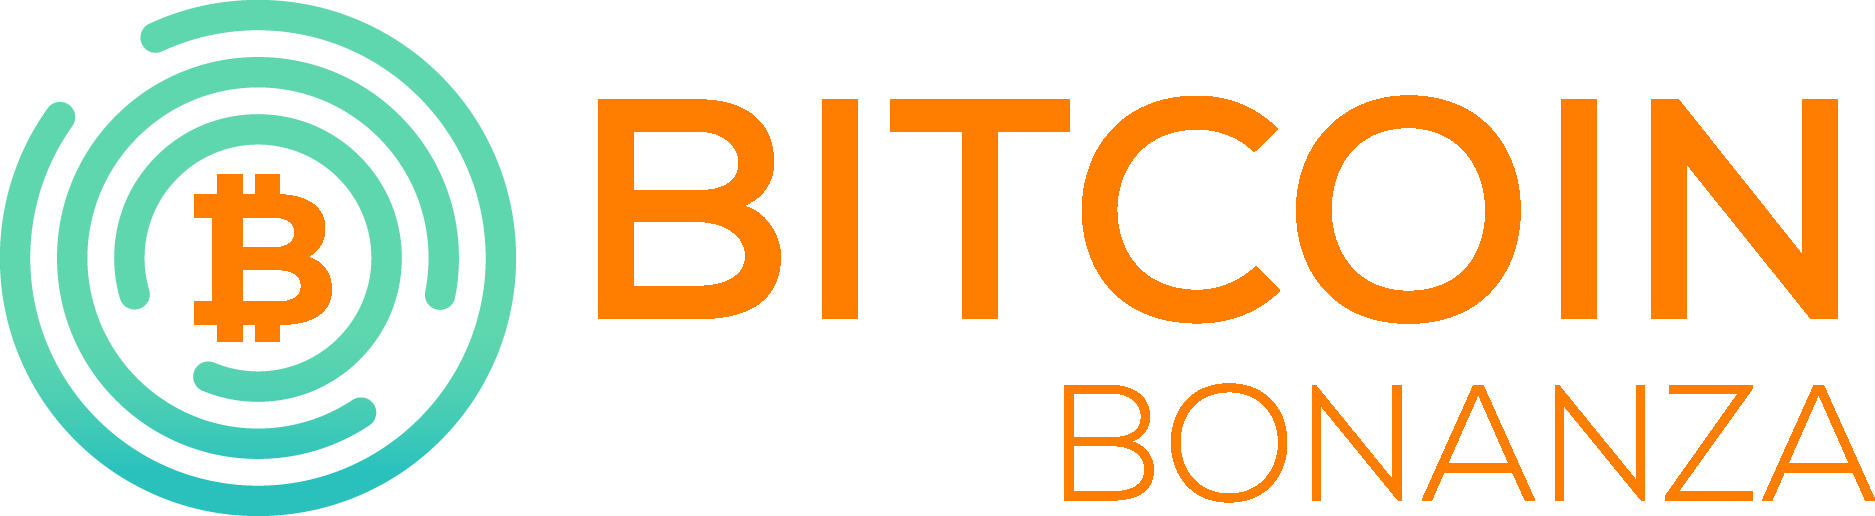 Bitcoin Bonanza - 